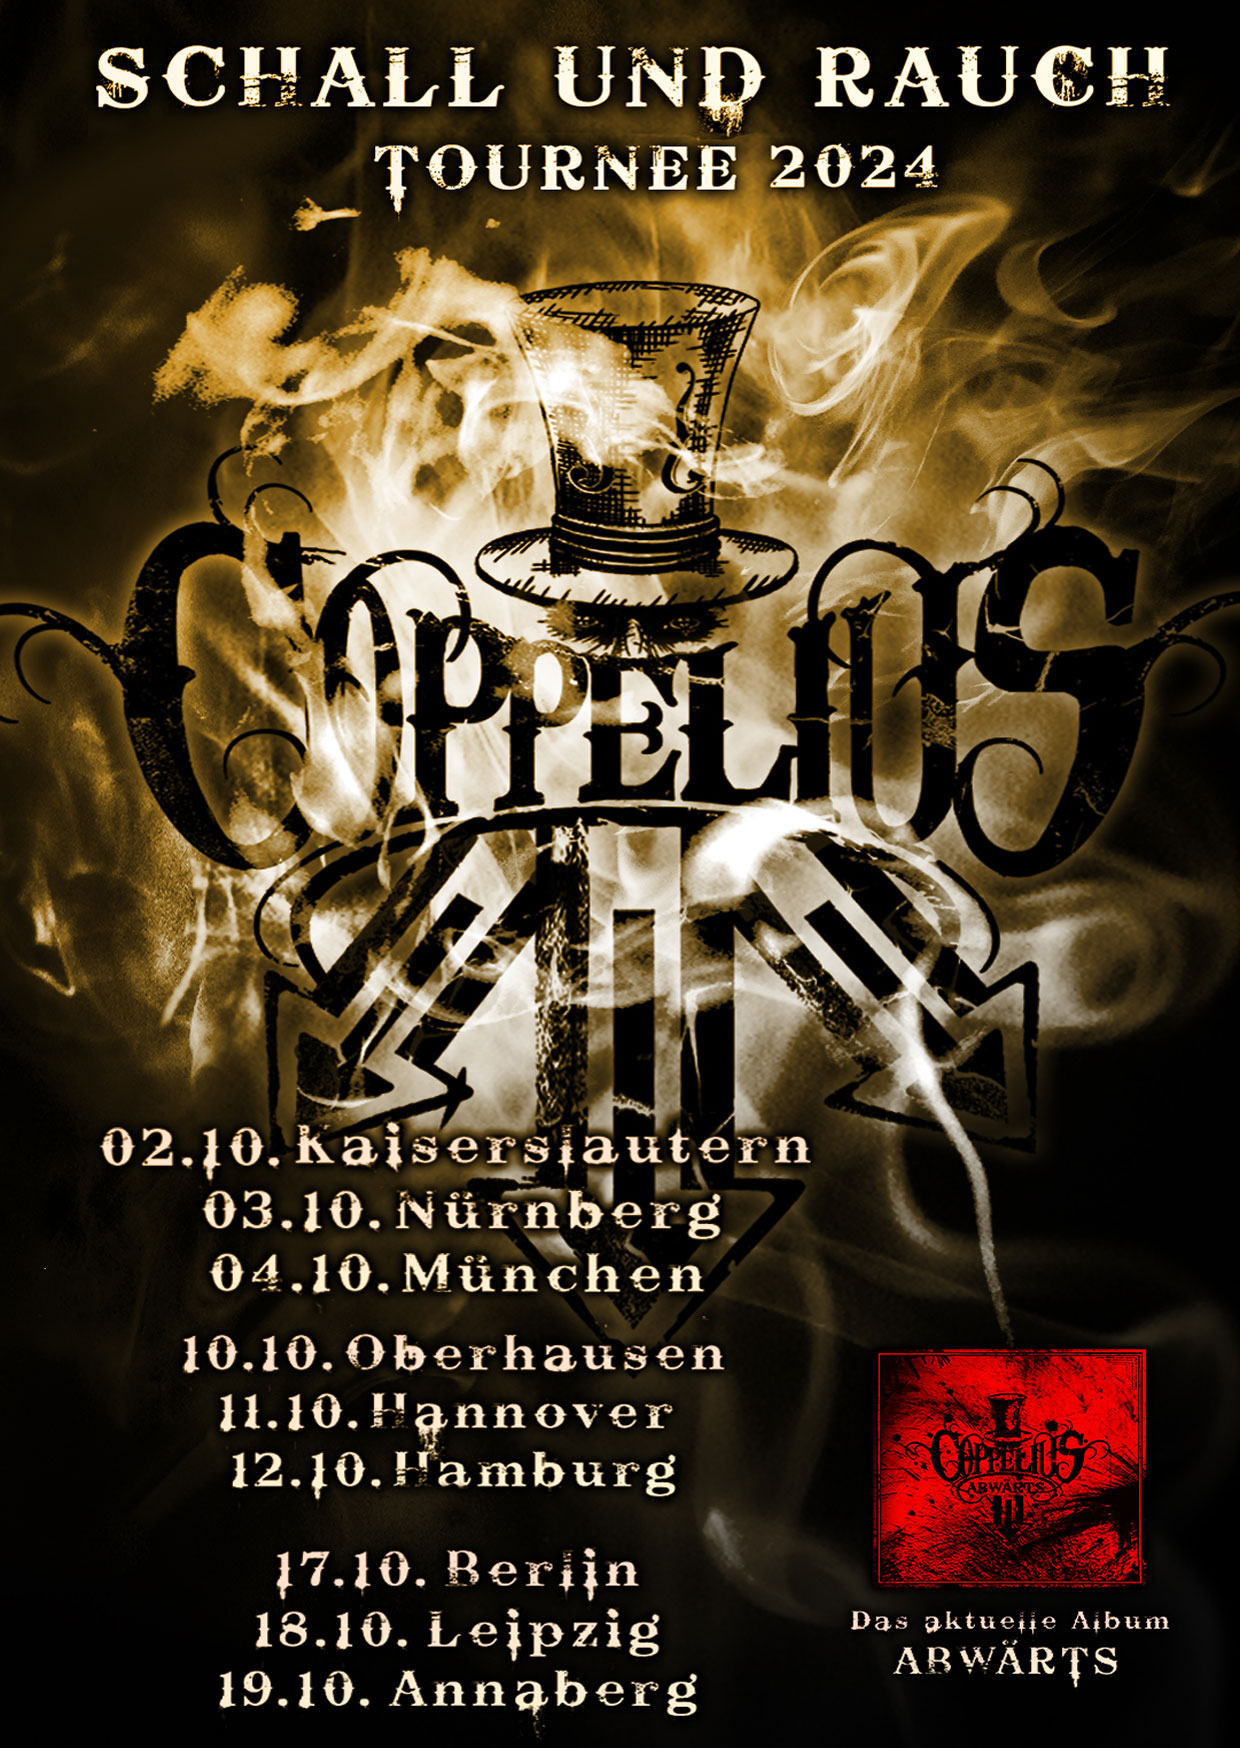 Coppelius - Schall Rauch Tournee 2024 at Backstage Werk Tickets